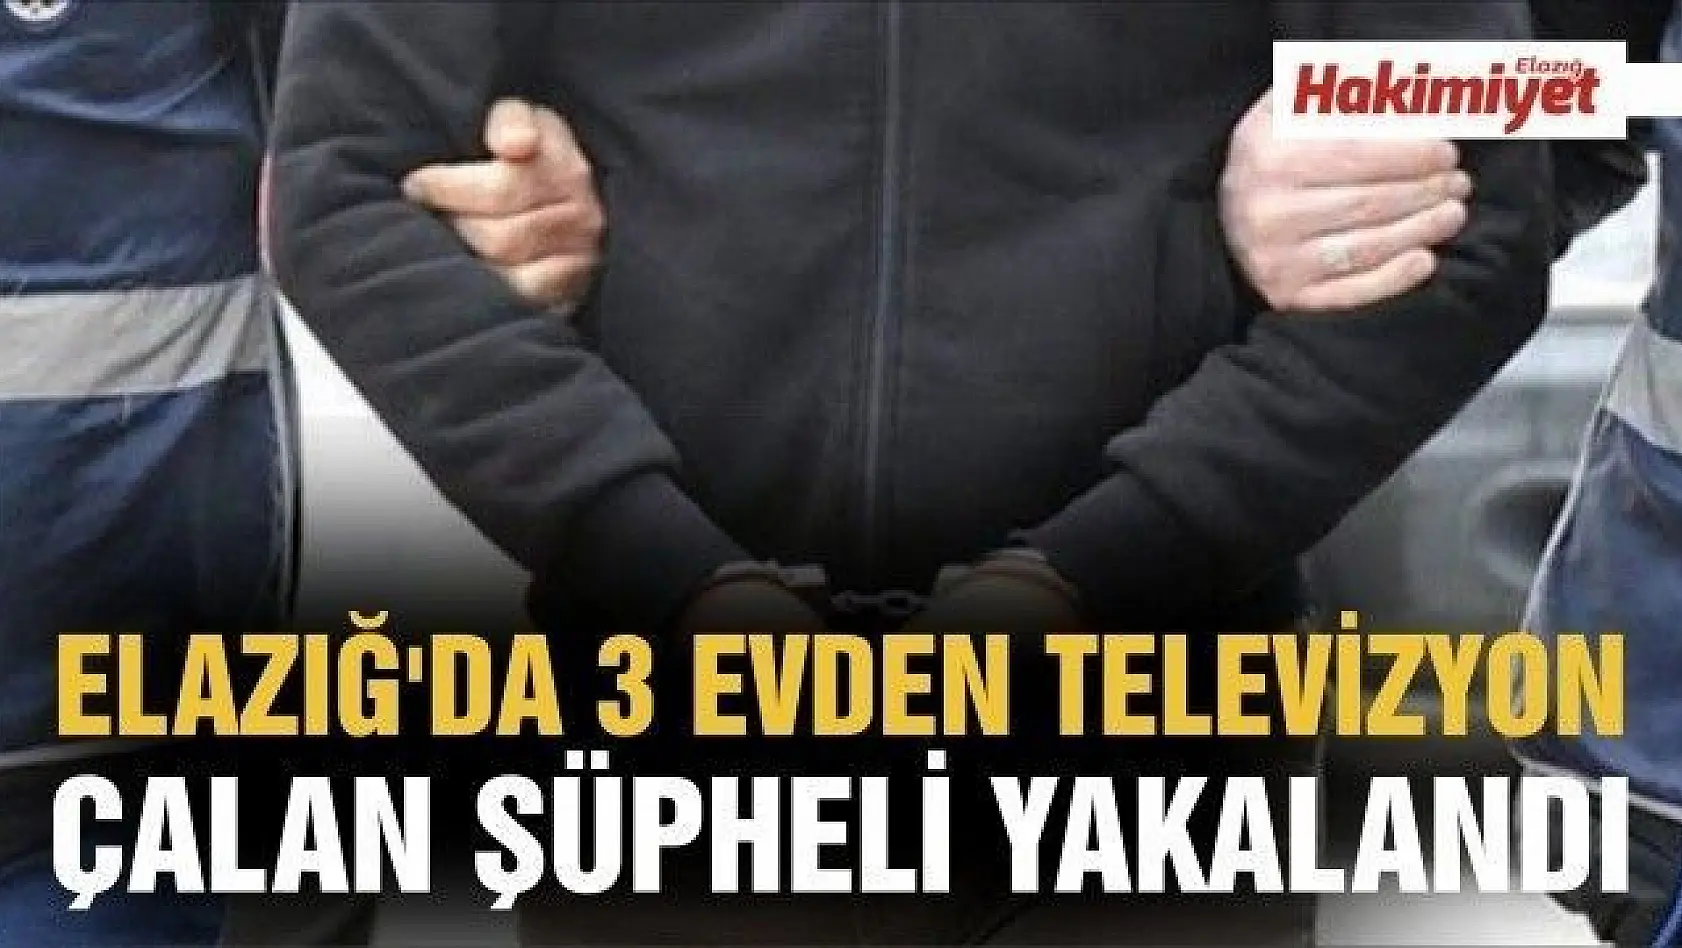  Elazığ'da 3 evden televizyon çalan şüpheli yakalandı